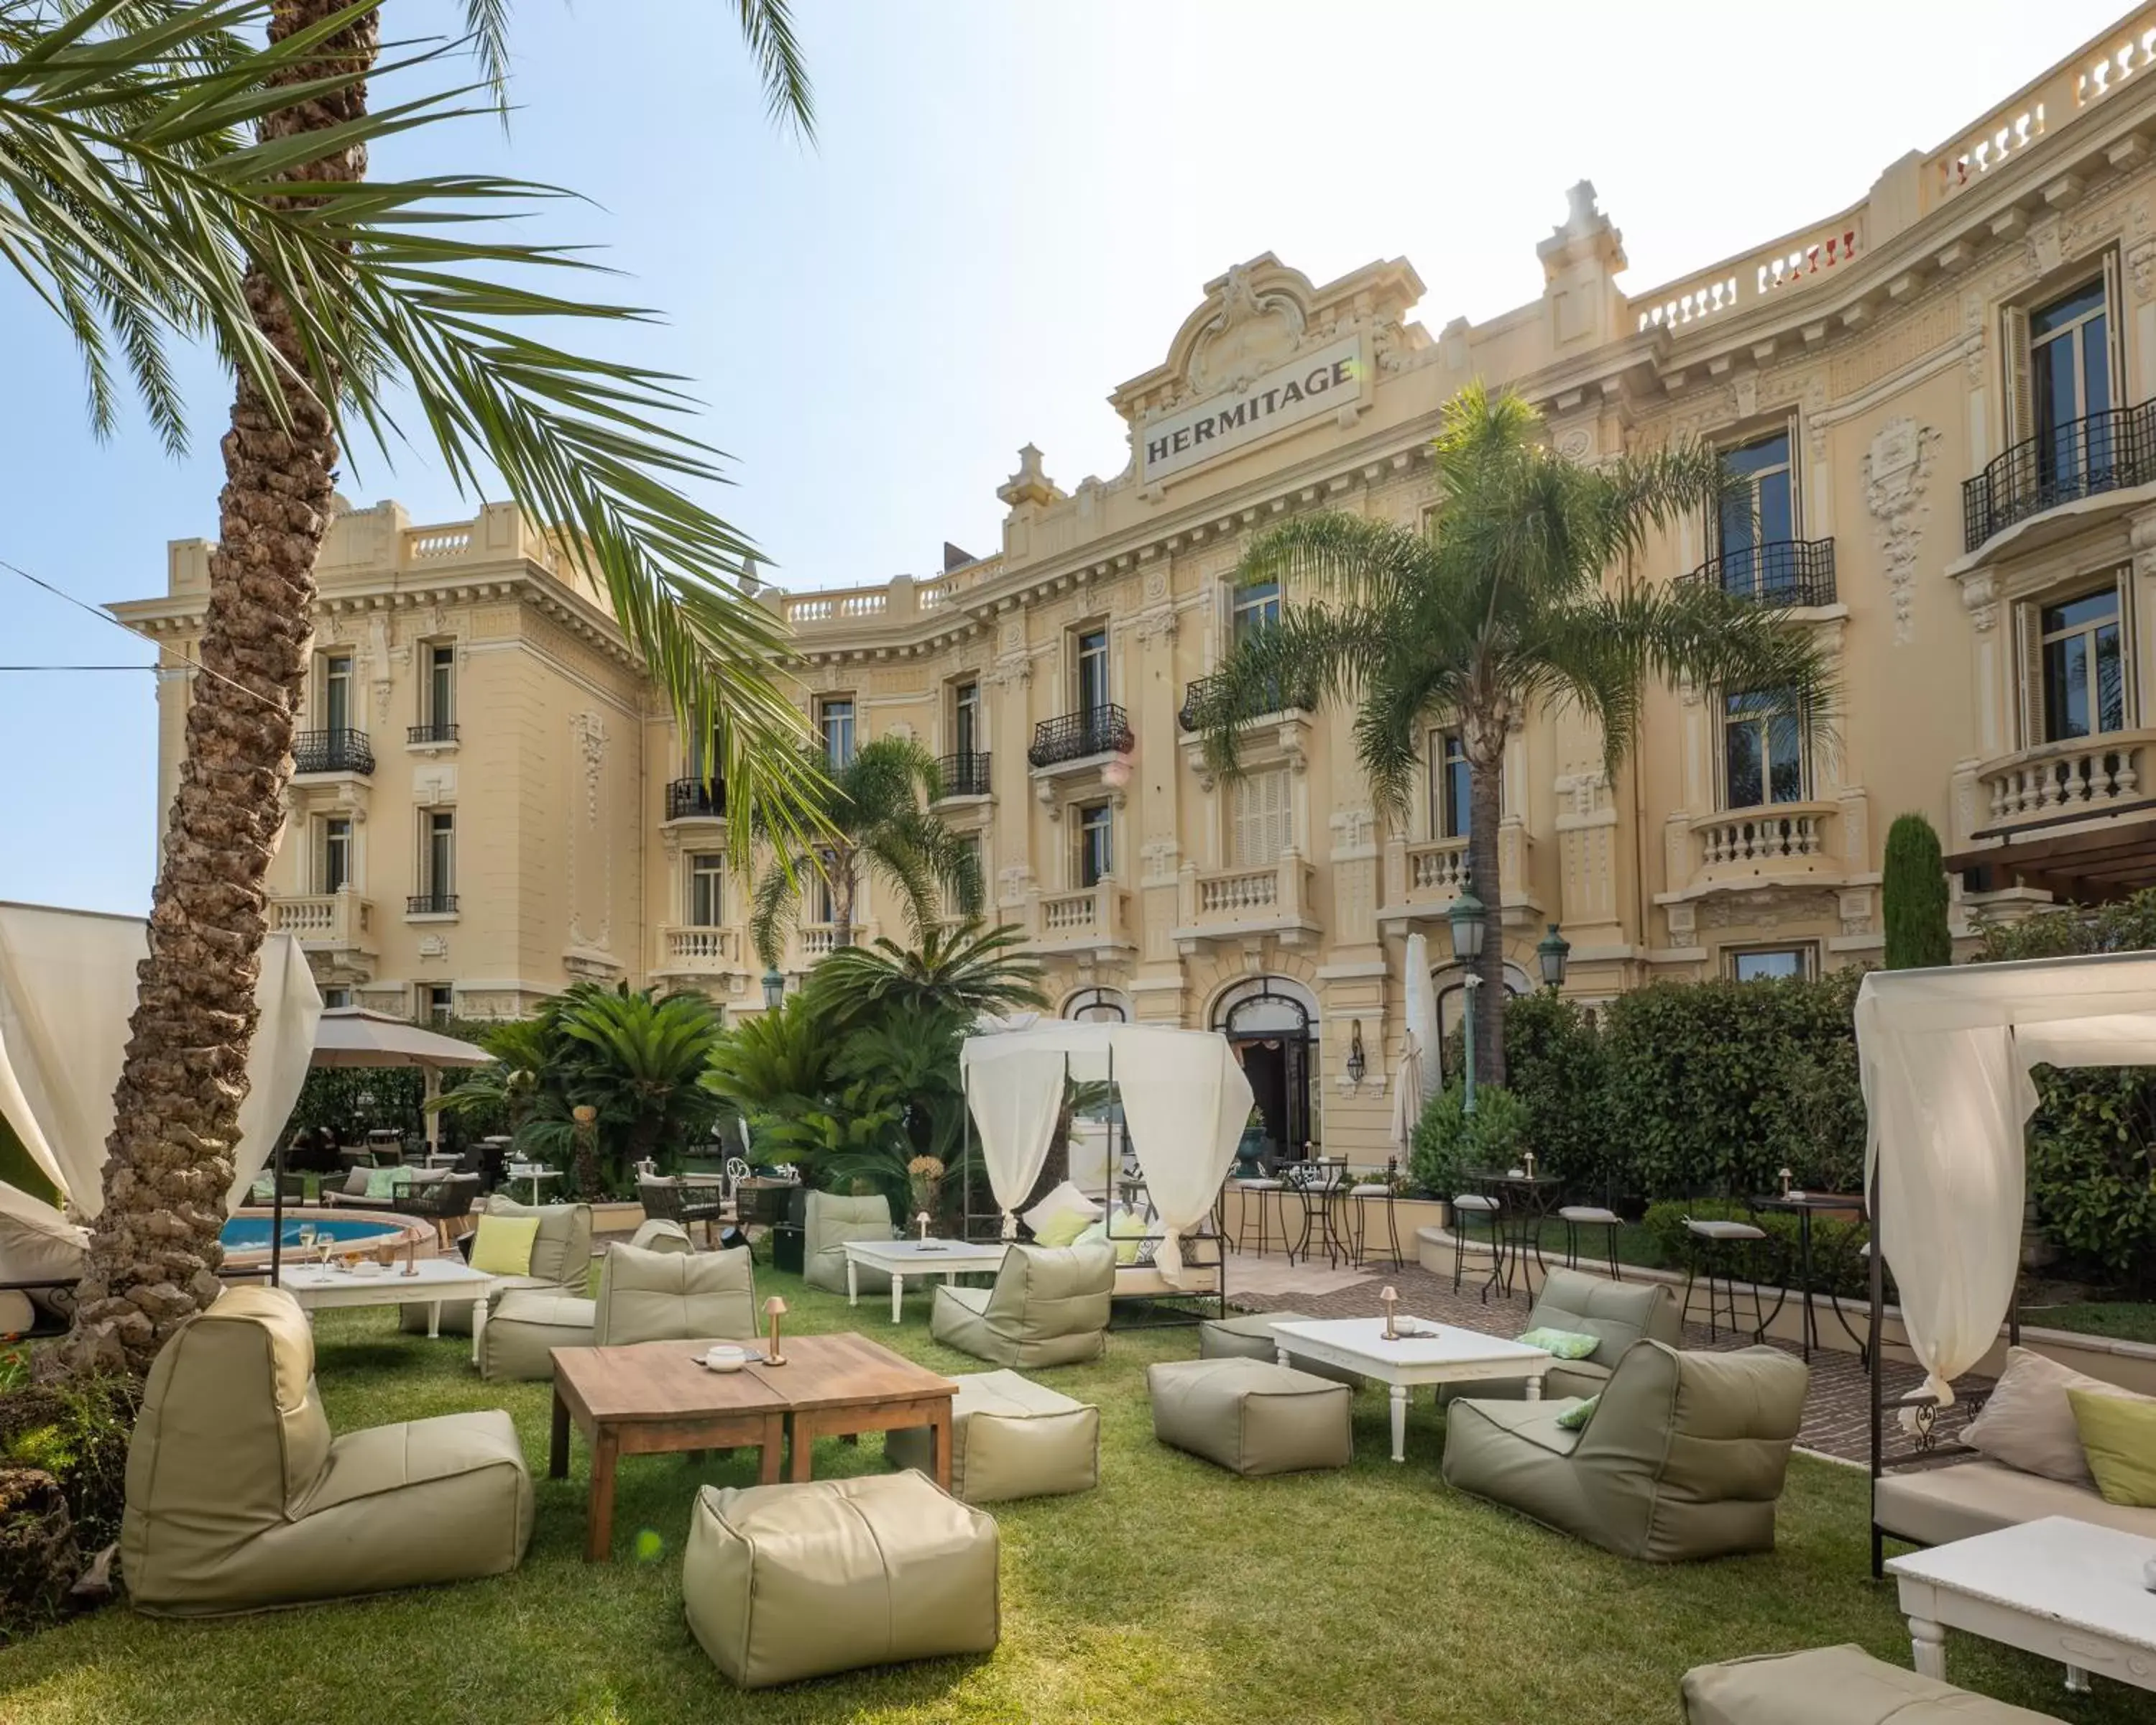 Property building in Hôtel Hermitage Monte-Carlo